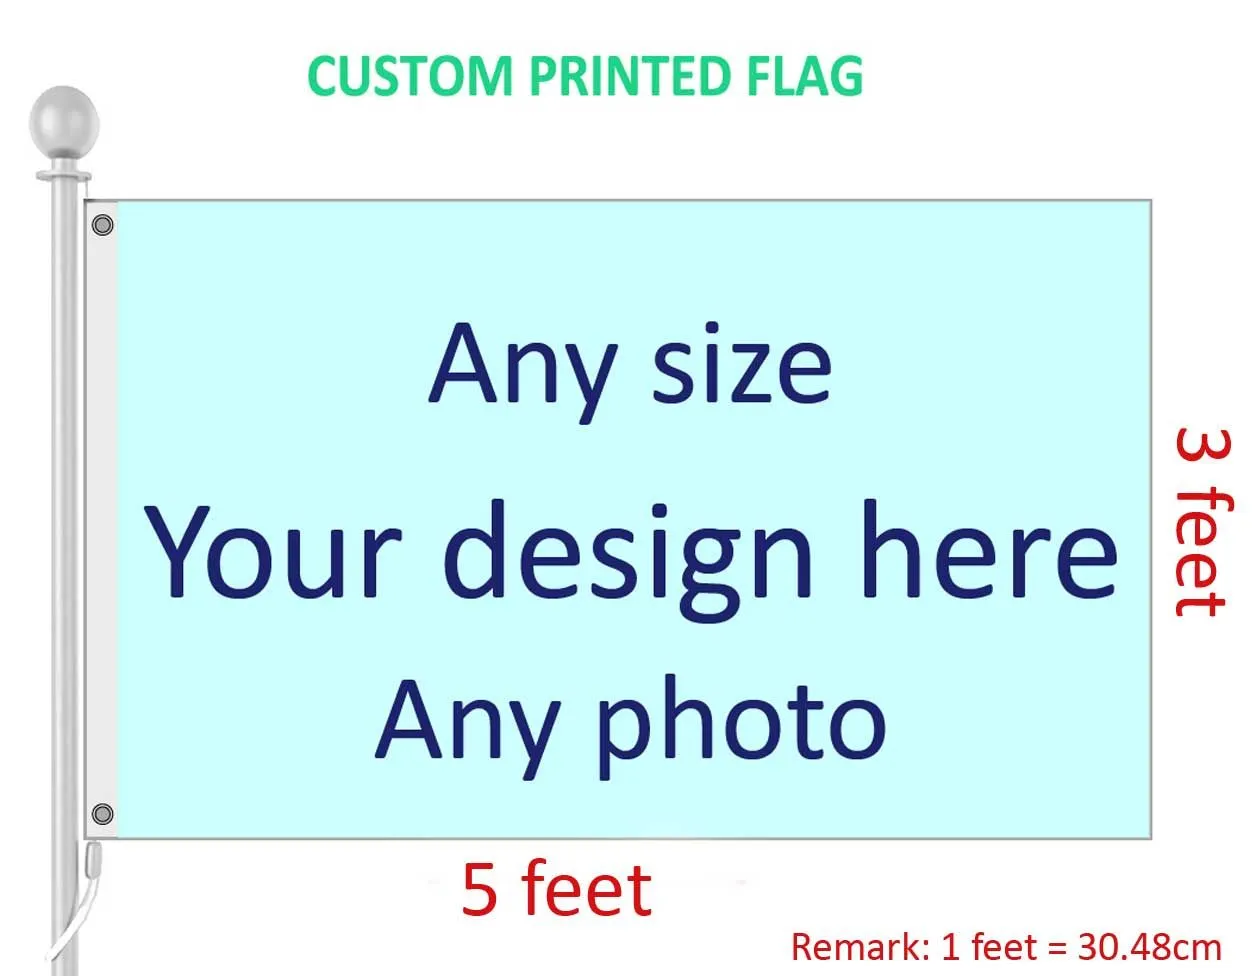 100D обложка с печатью флага, вал из полиэстера, любой цвет логотипа 3x5 и цифровой заказ с прокладками для баннера на ножках Xpdnw